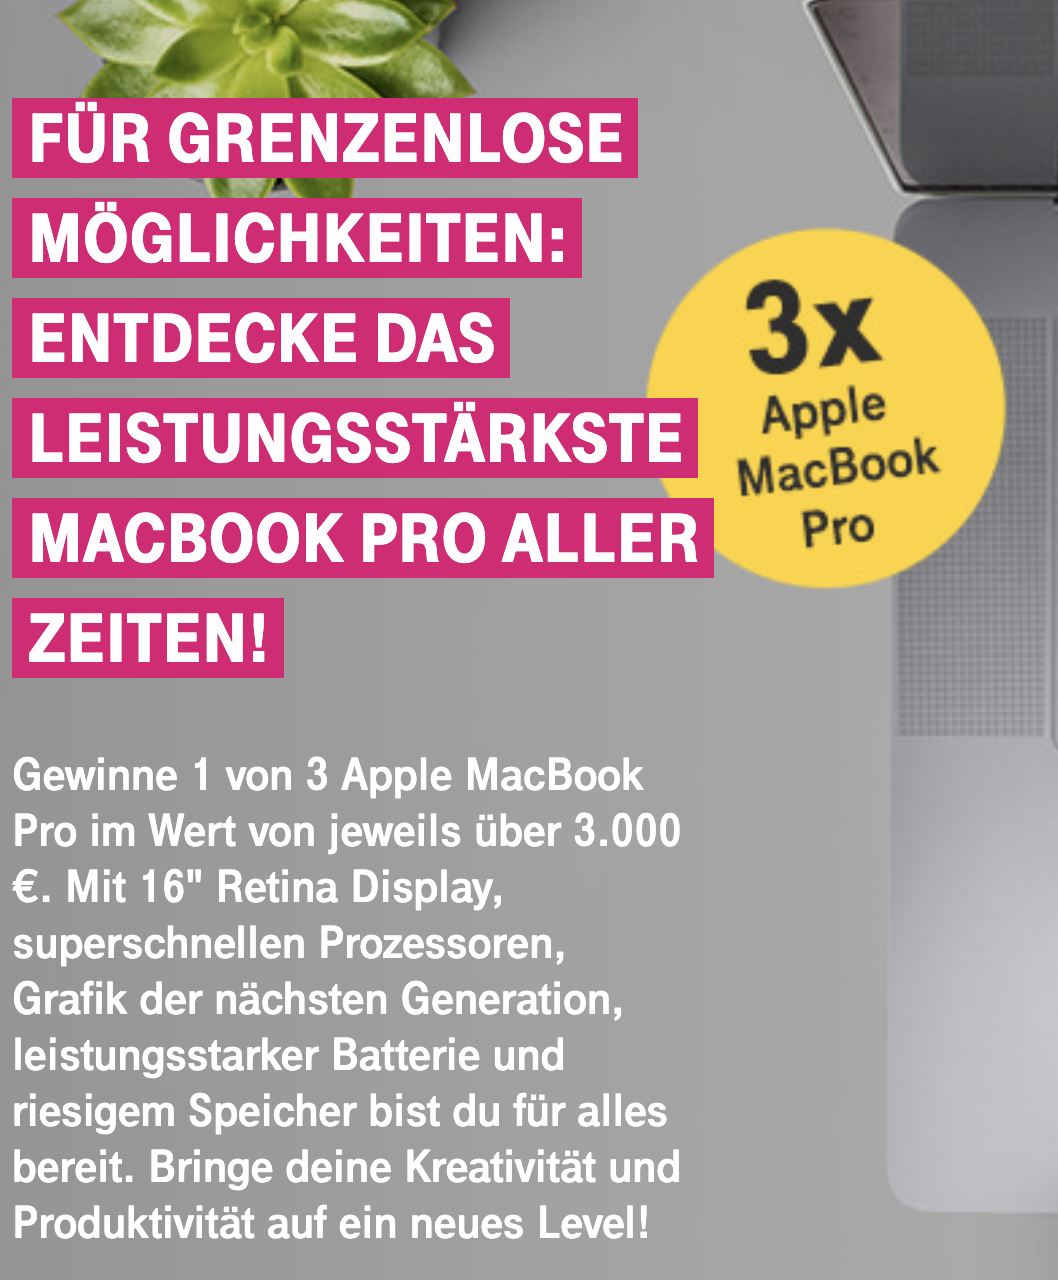 Telekom Gewinnspiel: Apple MacBook Pro zu gewinnen